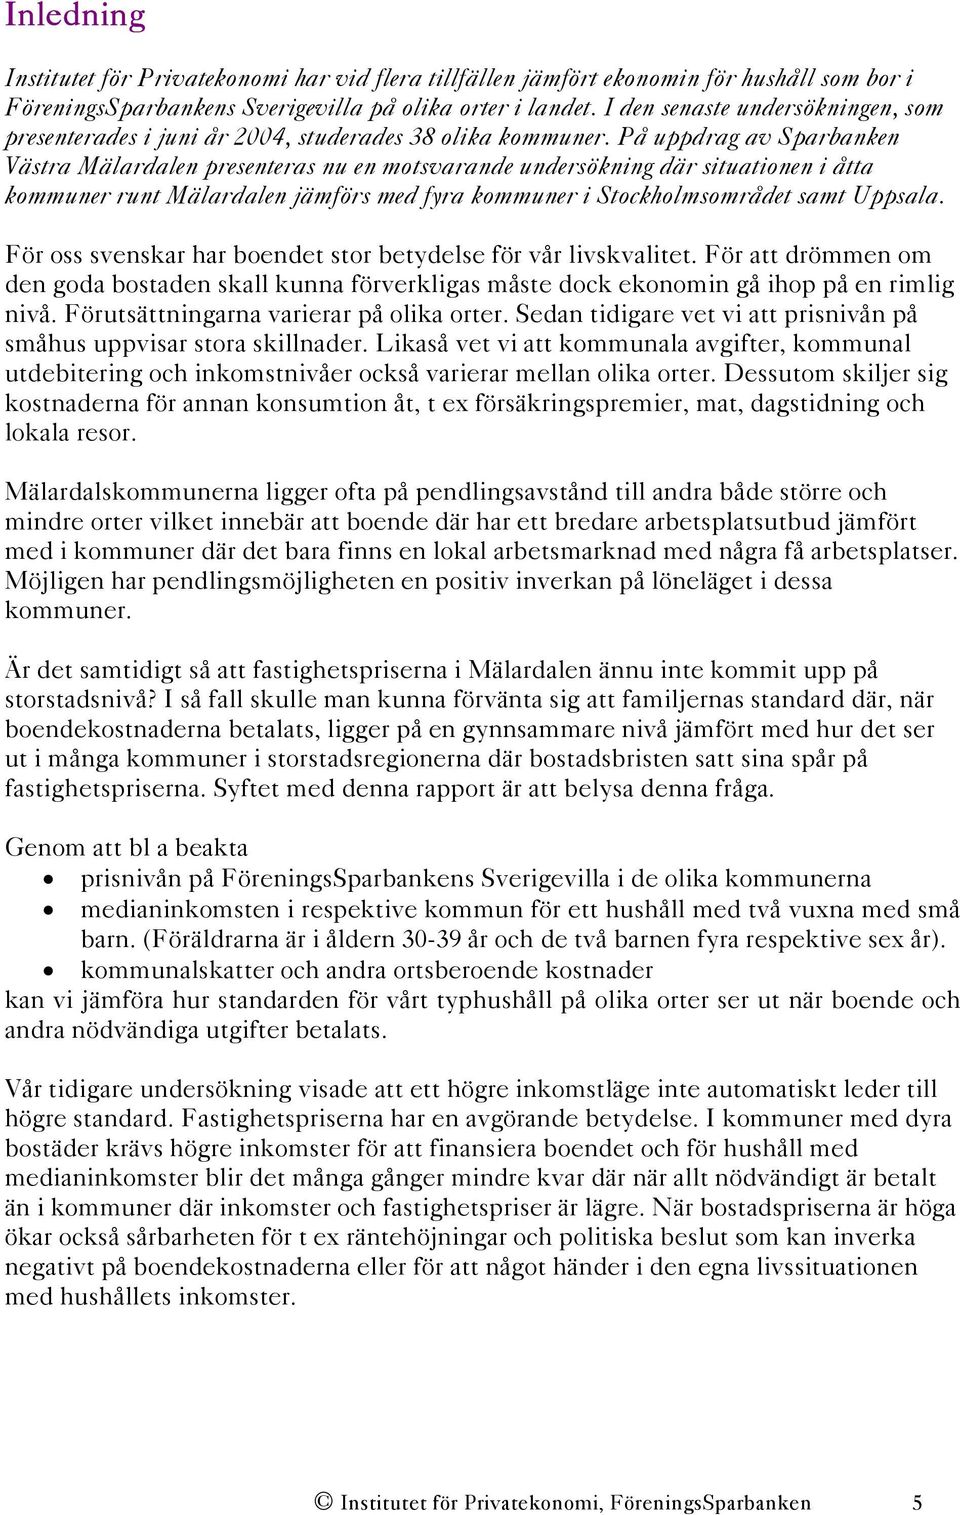 På uppdrag av Sparbanken Västra Mälardalen presenteras nu en motsvarande undersökning där situationen i åtta kommuner runt Mälardalen jämförs med fyra kommuner i Stockholmsområdet samt Uppsala.